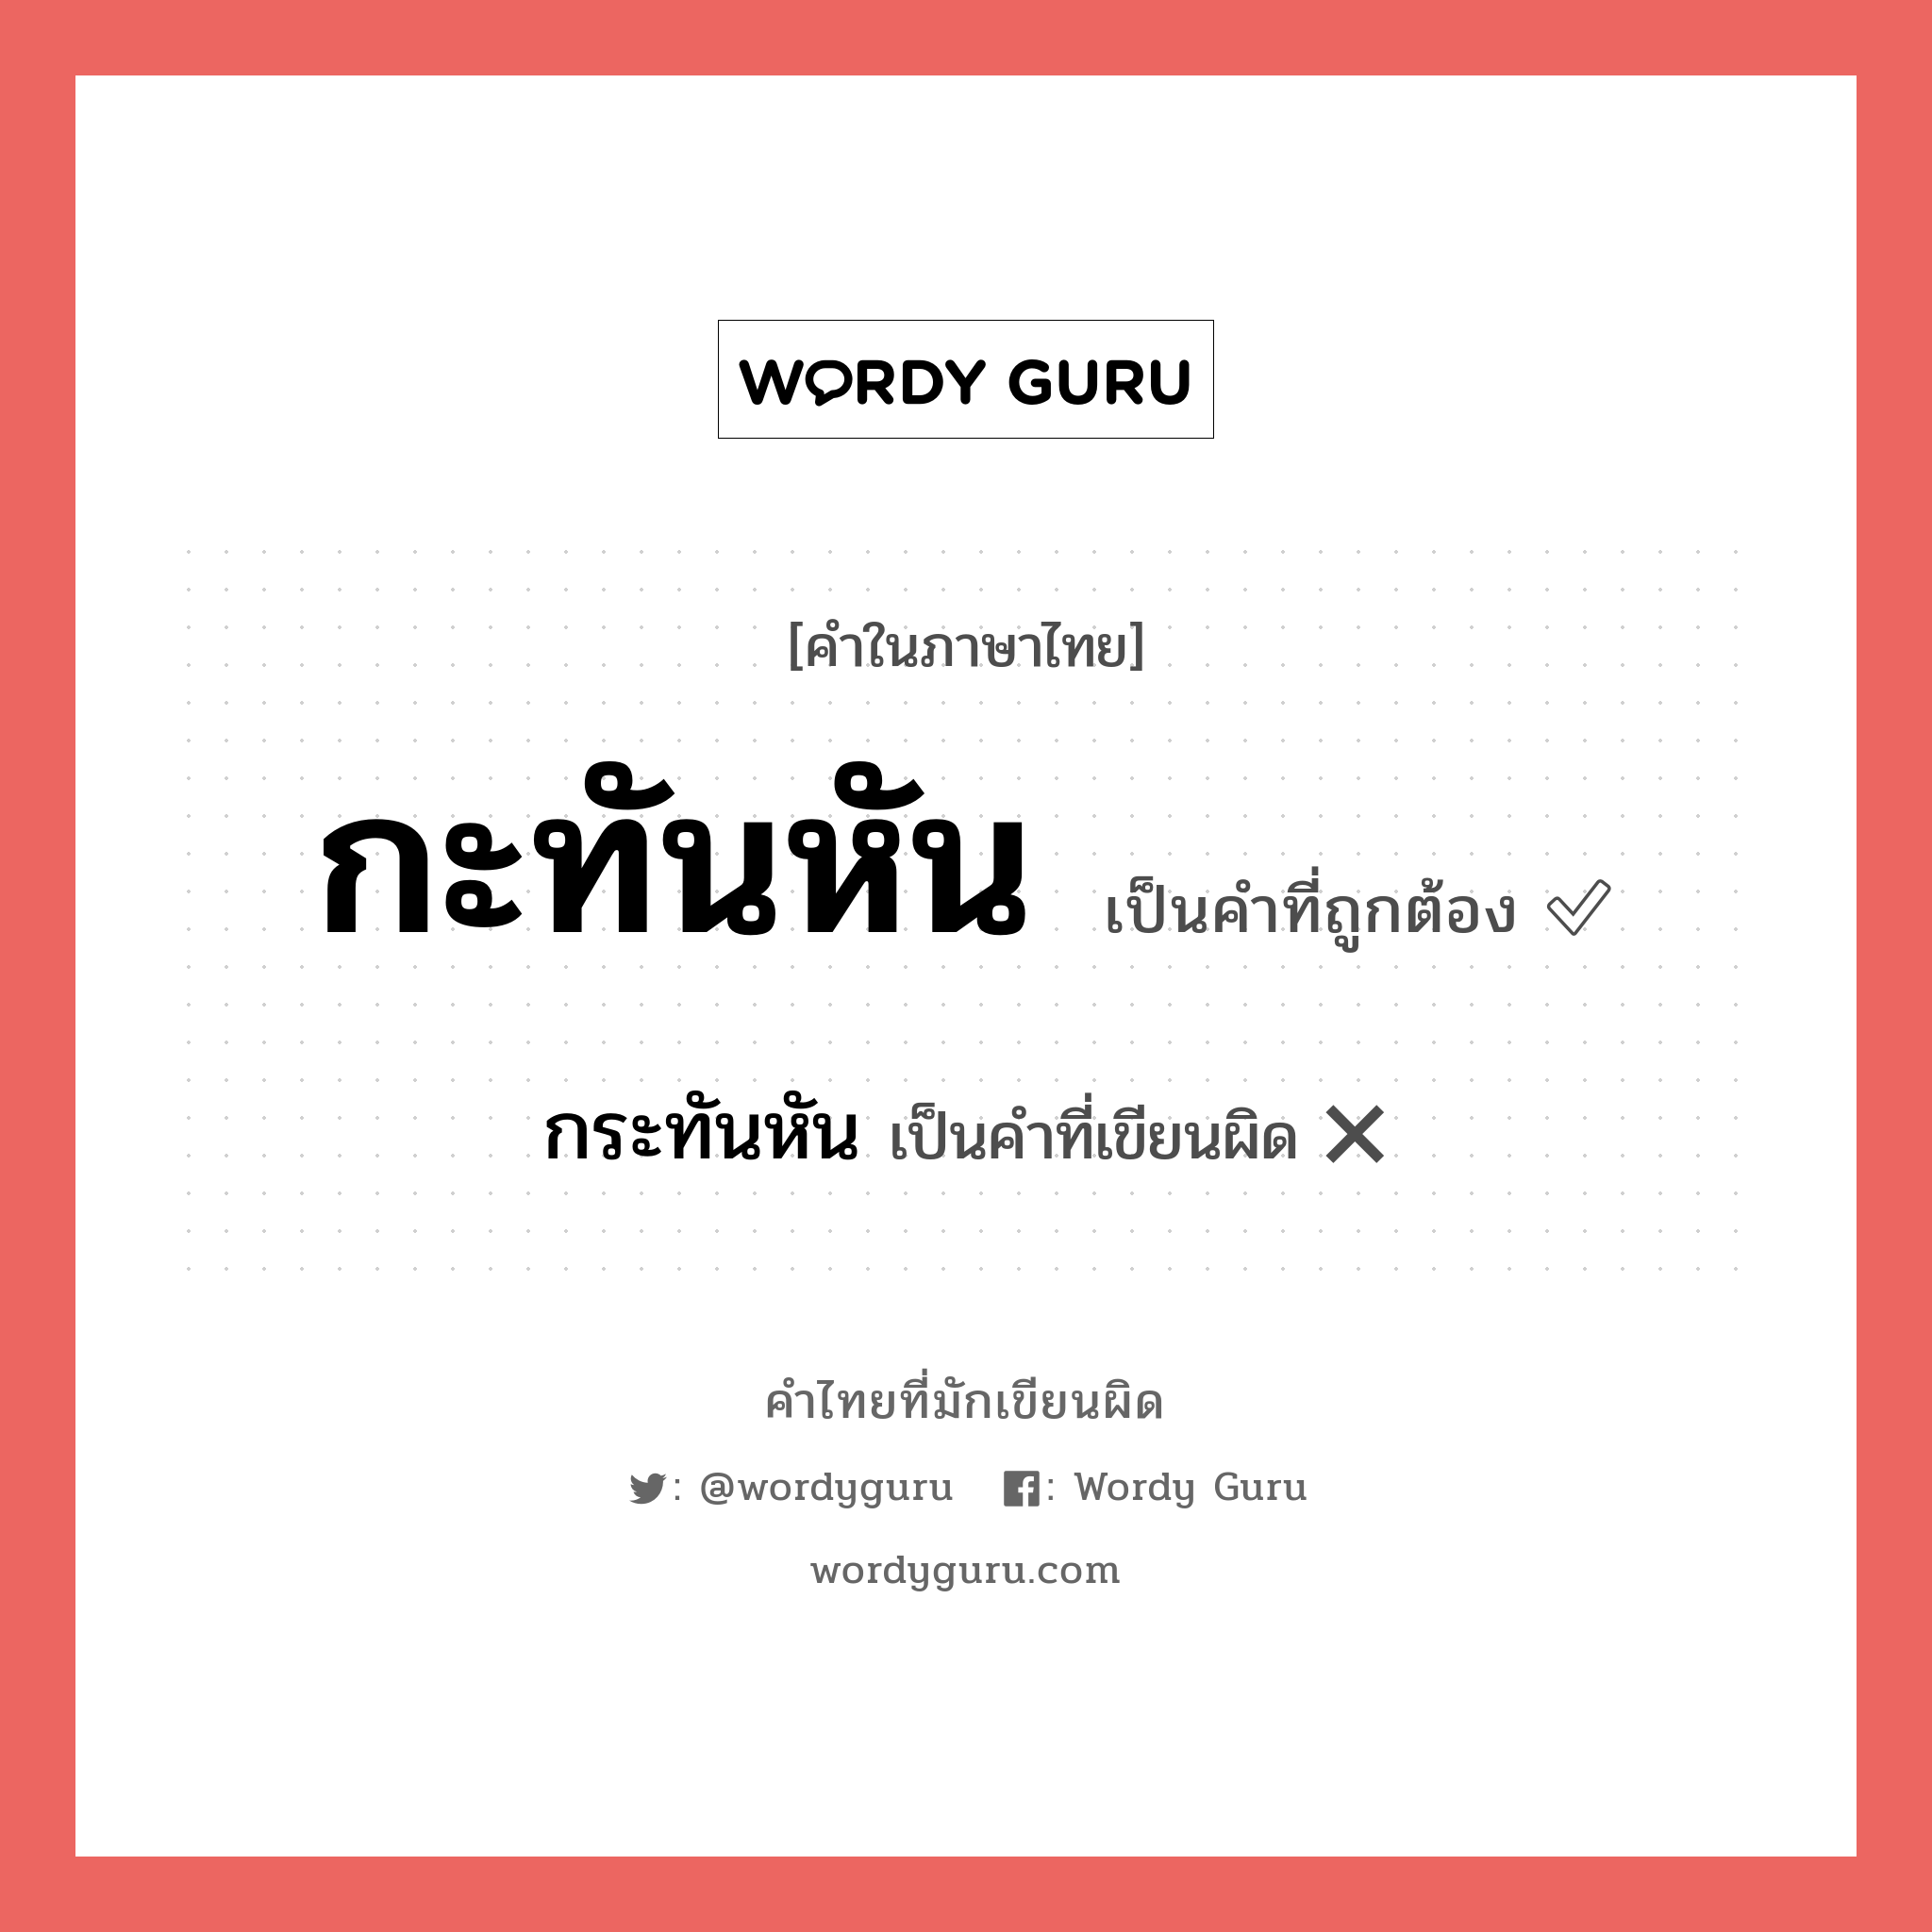 กระทันหัน หรือ กะทันหัน คำไหนเขียนถูก?, คำในภาษาไทยที่มักเขียนผิด กระทันหัน คำที่ผิด ❌ กะทันหัน